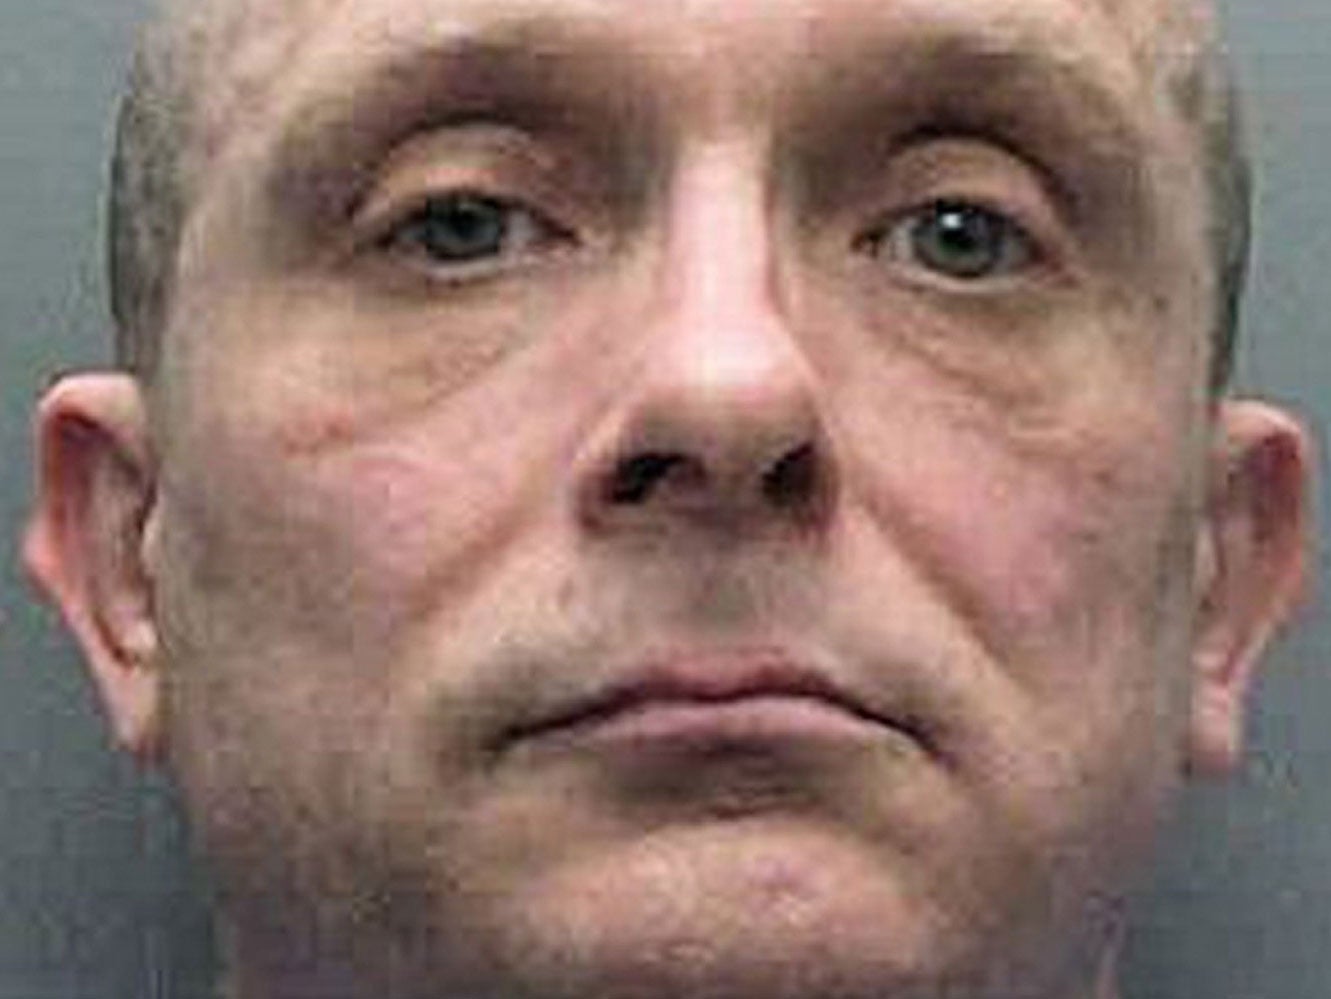 Russell Bishop denies murdering Karen Hadaway and Nicola Fellows in 1986